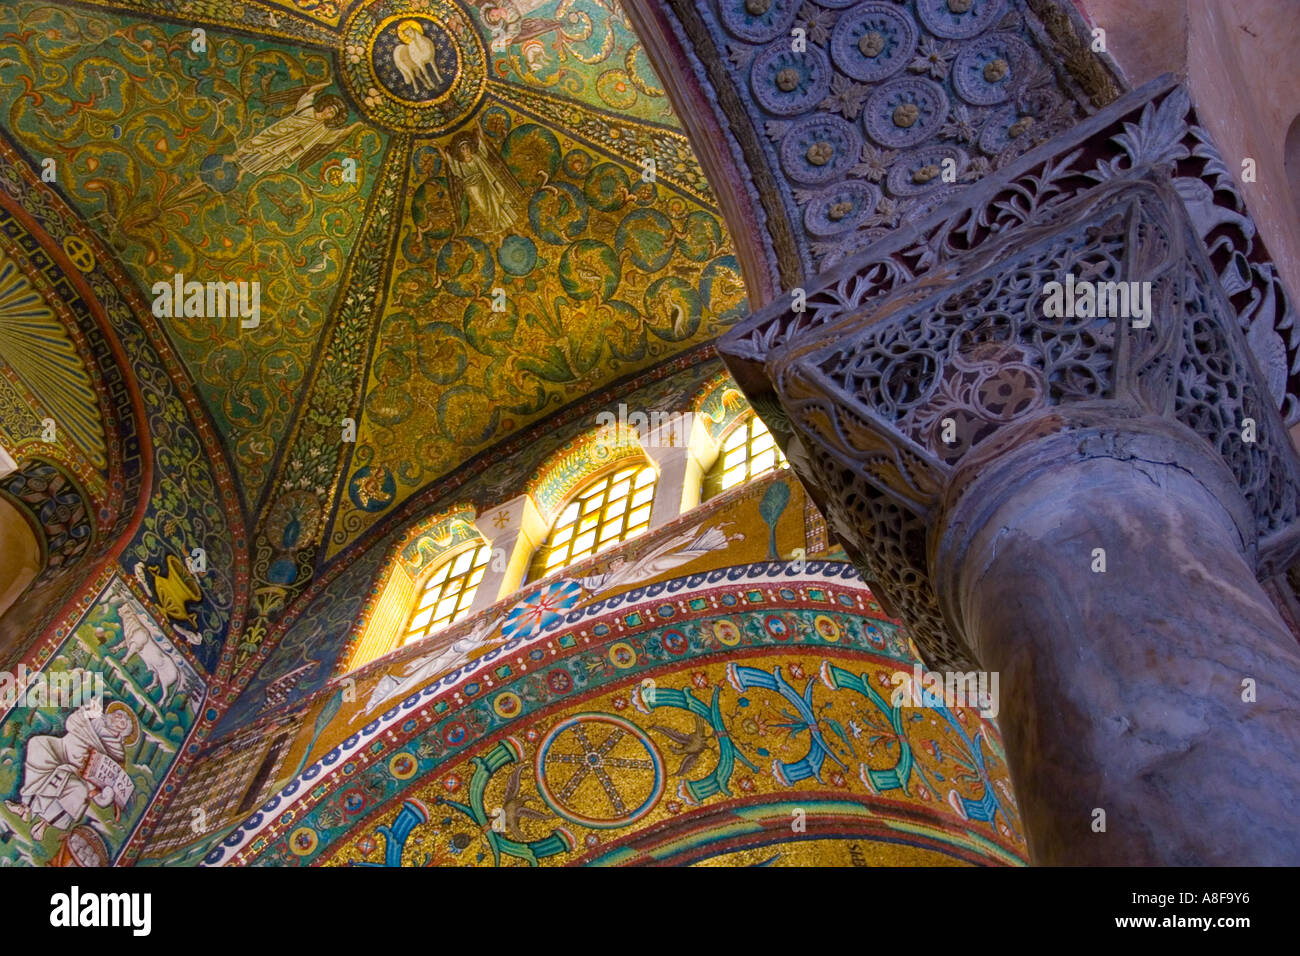 Ravenna, soffitto, archi, mosaici, colorata, lucida, fantasia, religione, credenti, preghiere antiche, complesso, piastrelle, decorazione Foto Stock